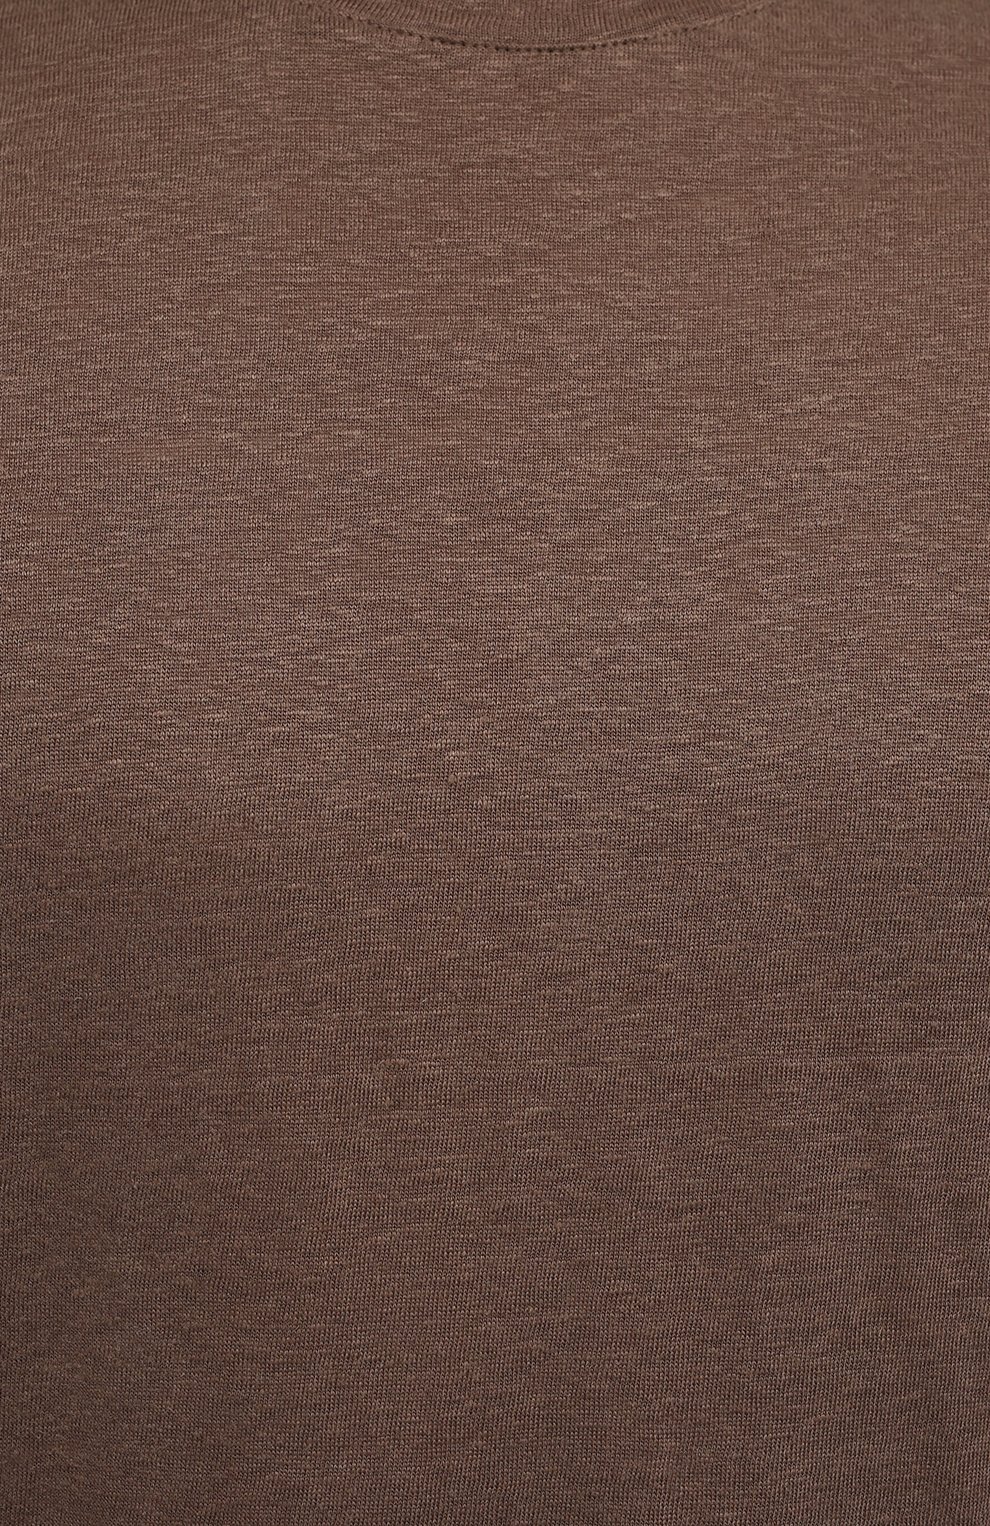 Мужская льняная футболка ERMENEGILDO ZEGNA коричневого цвета, арт. UU564/706 | Фото 5 (Принт: Без принта; Рукава: Короткие; Длина (для топов): Стандартные; Материал внешний: Лен; Стили: Кэжуэл)